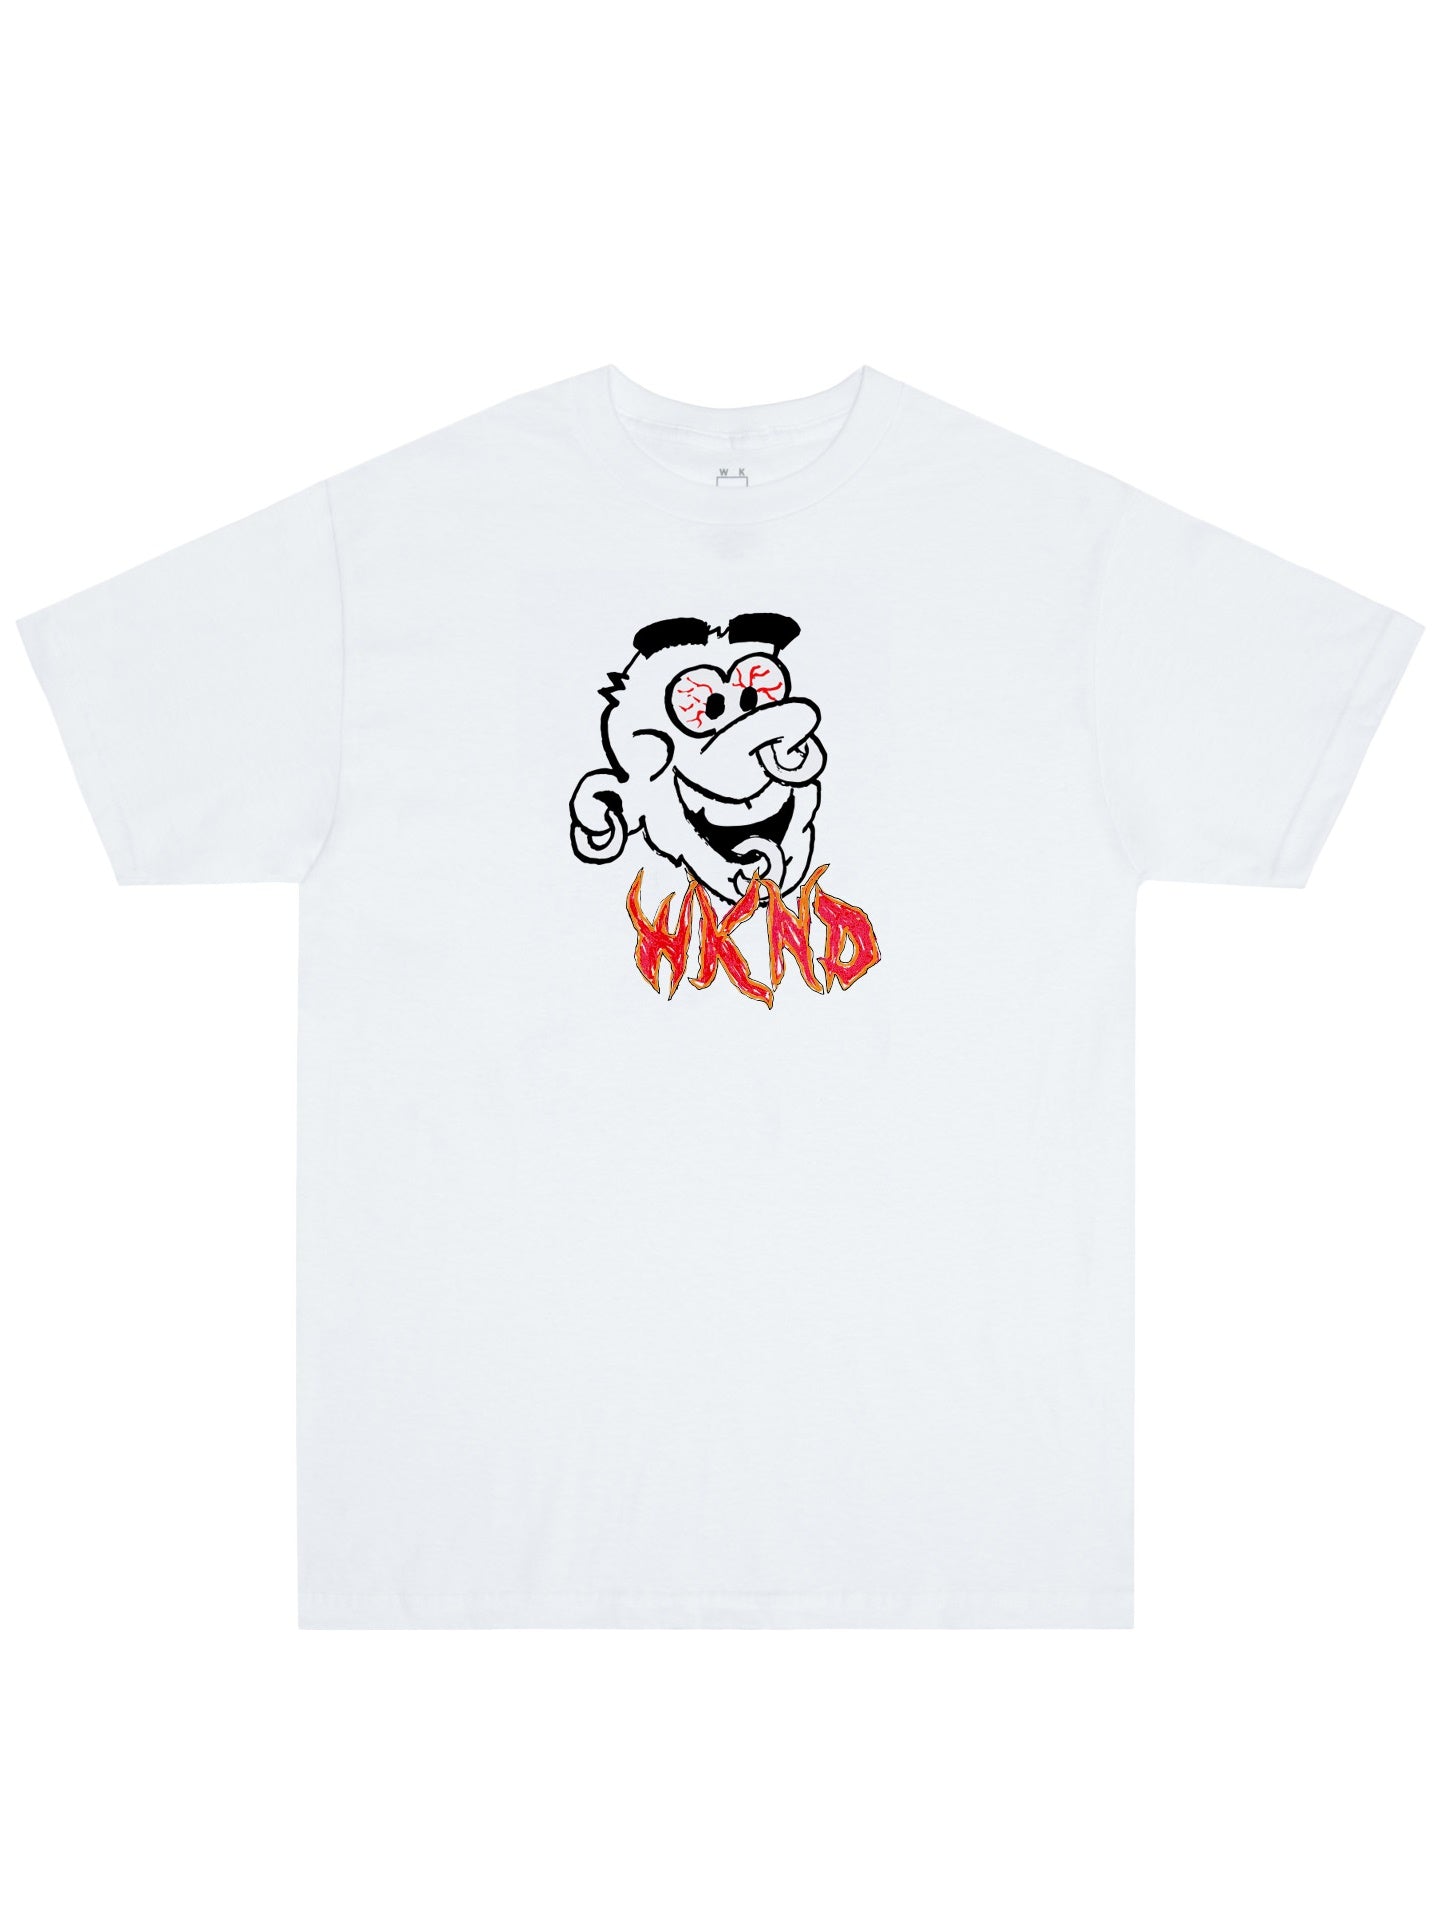 WKND ワイヤード T シャツ - ホワイト